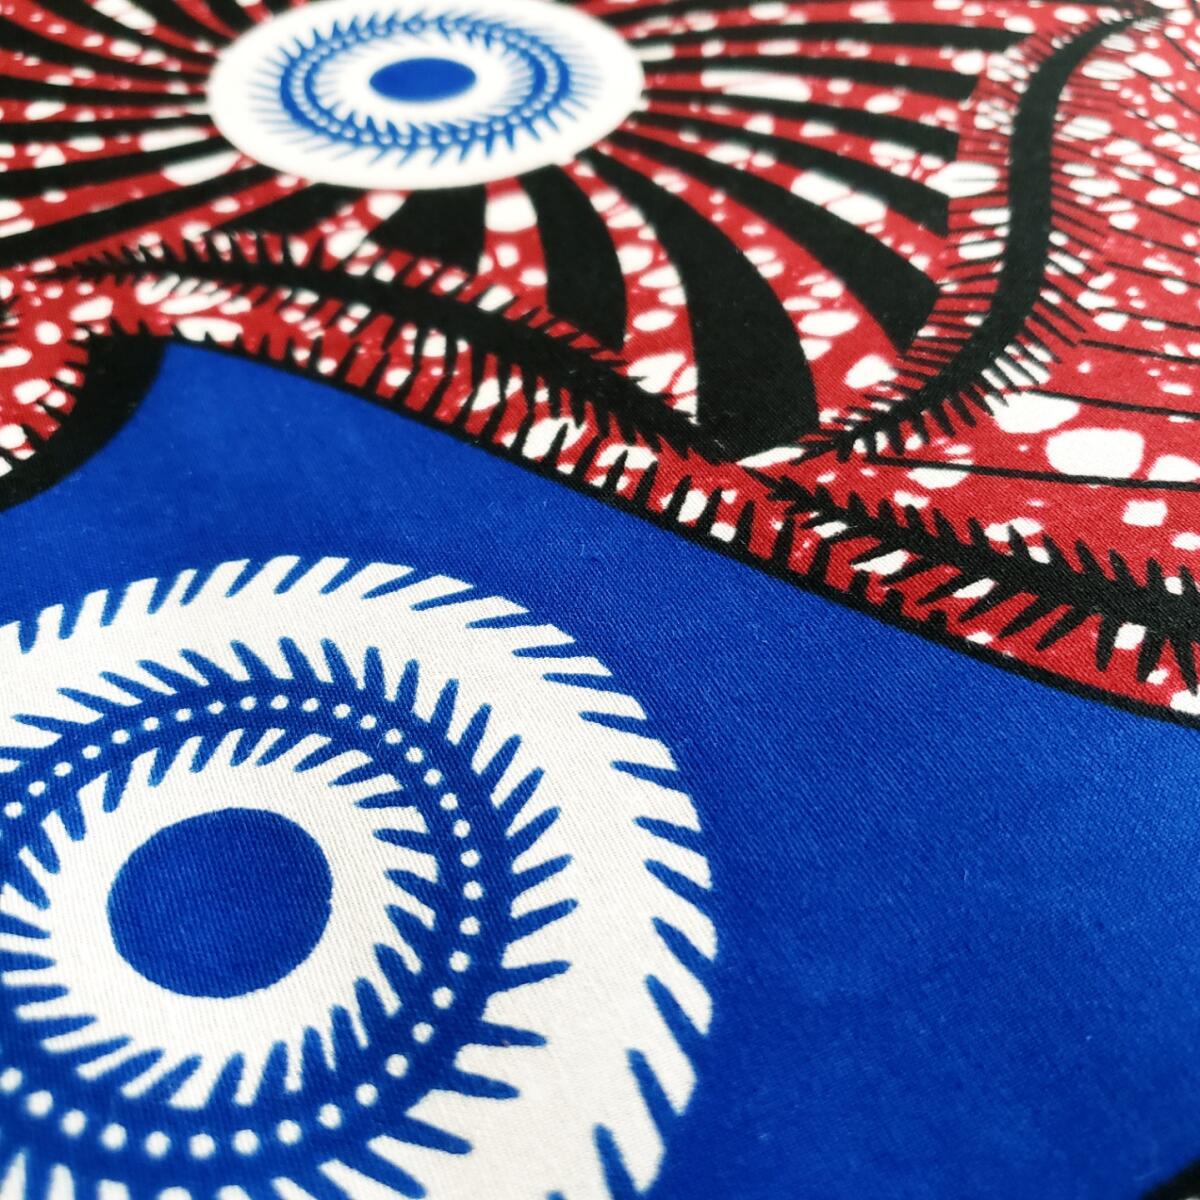 African Ankara Fabric, 6 yards (Royal-Brown)